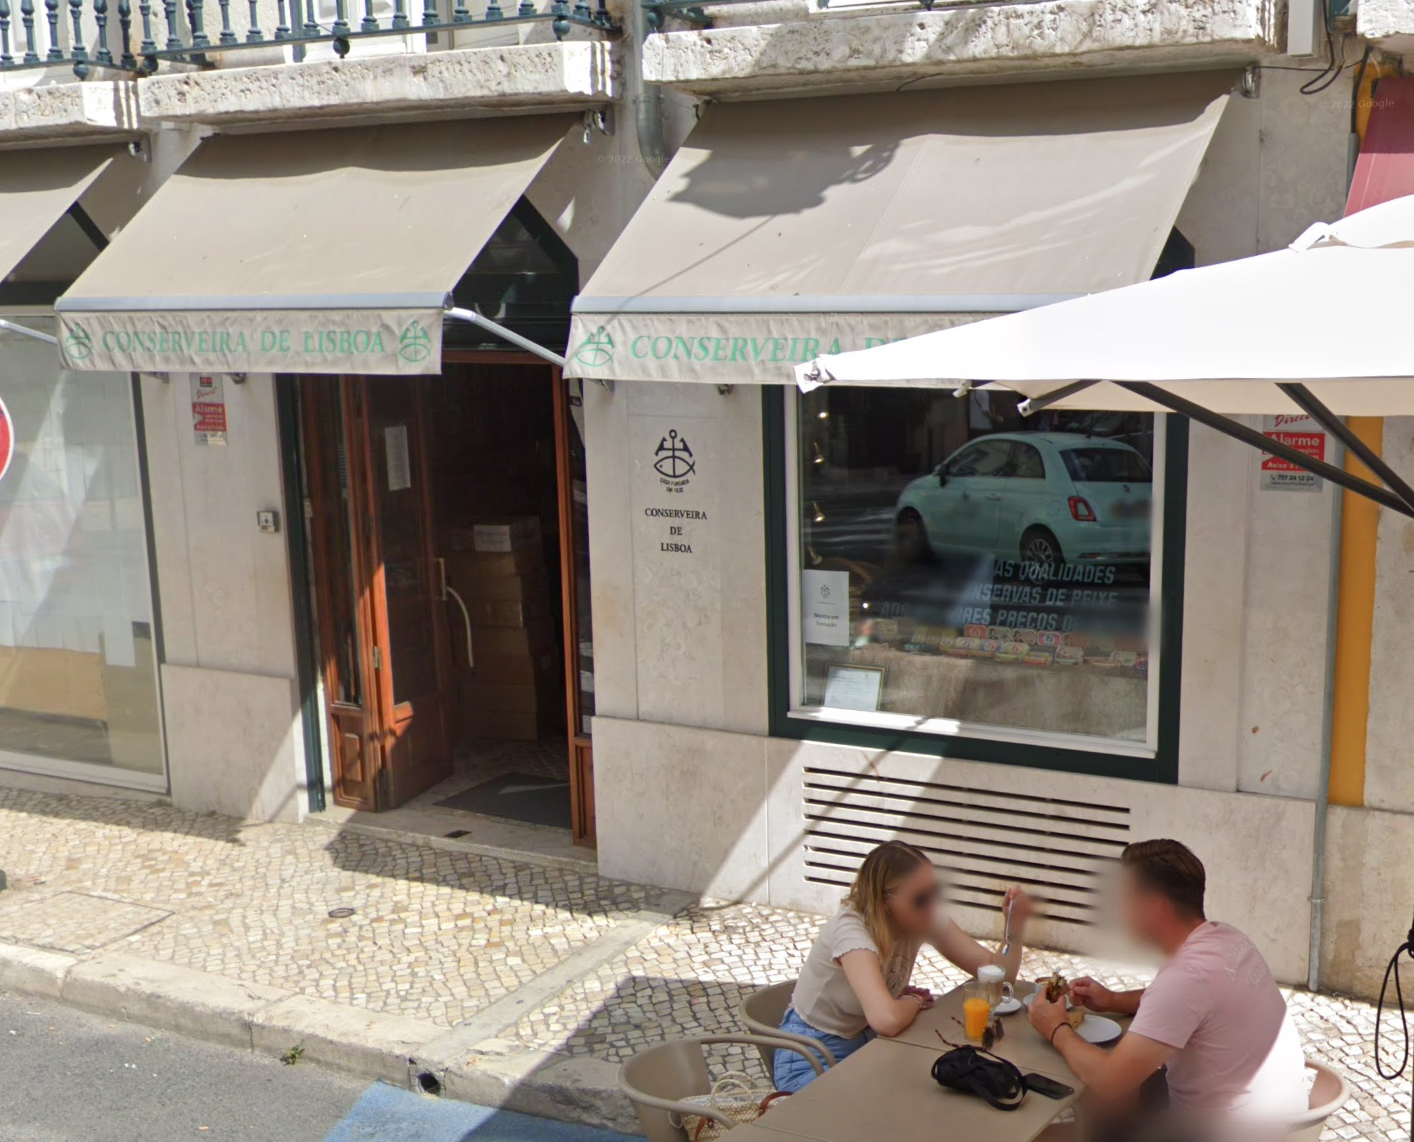 Conserveira de Lisboa by Google Earth